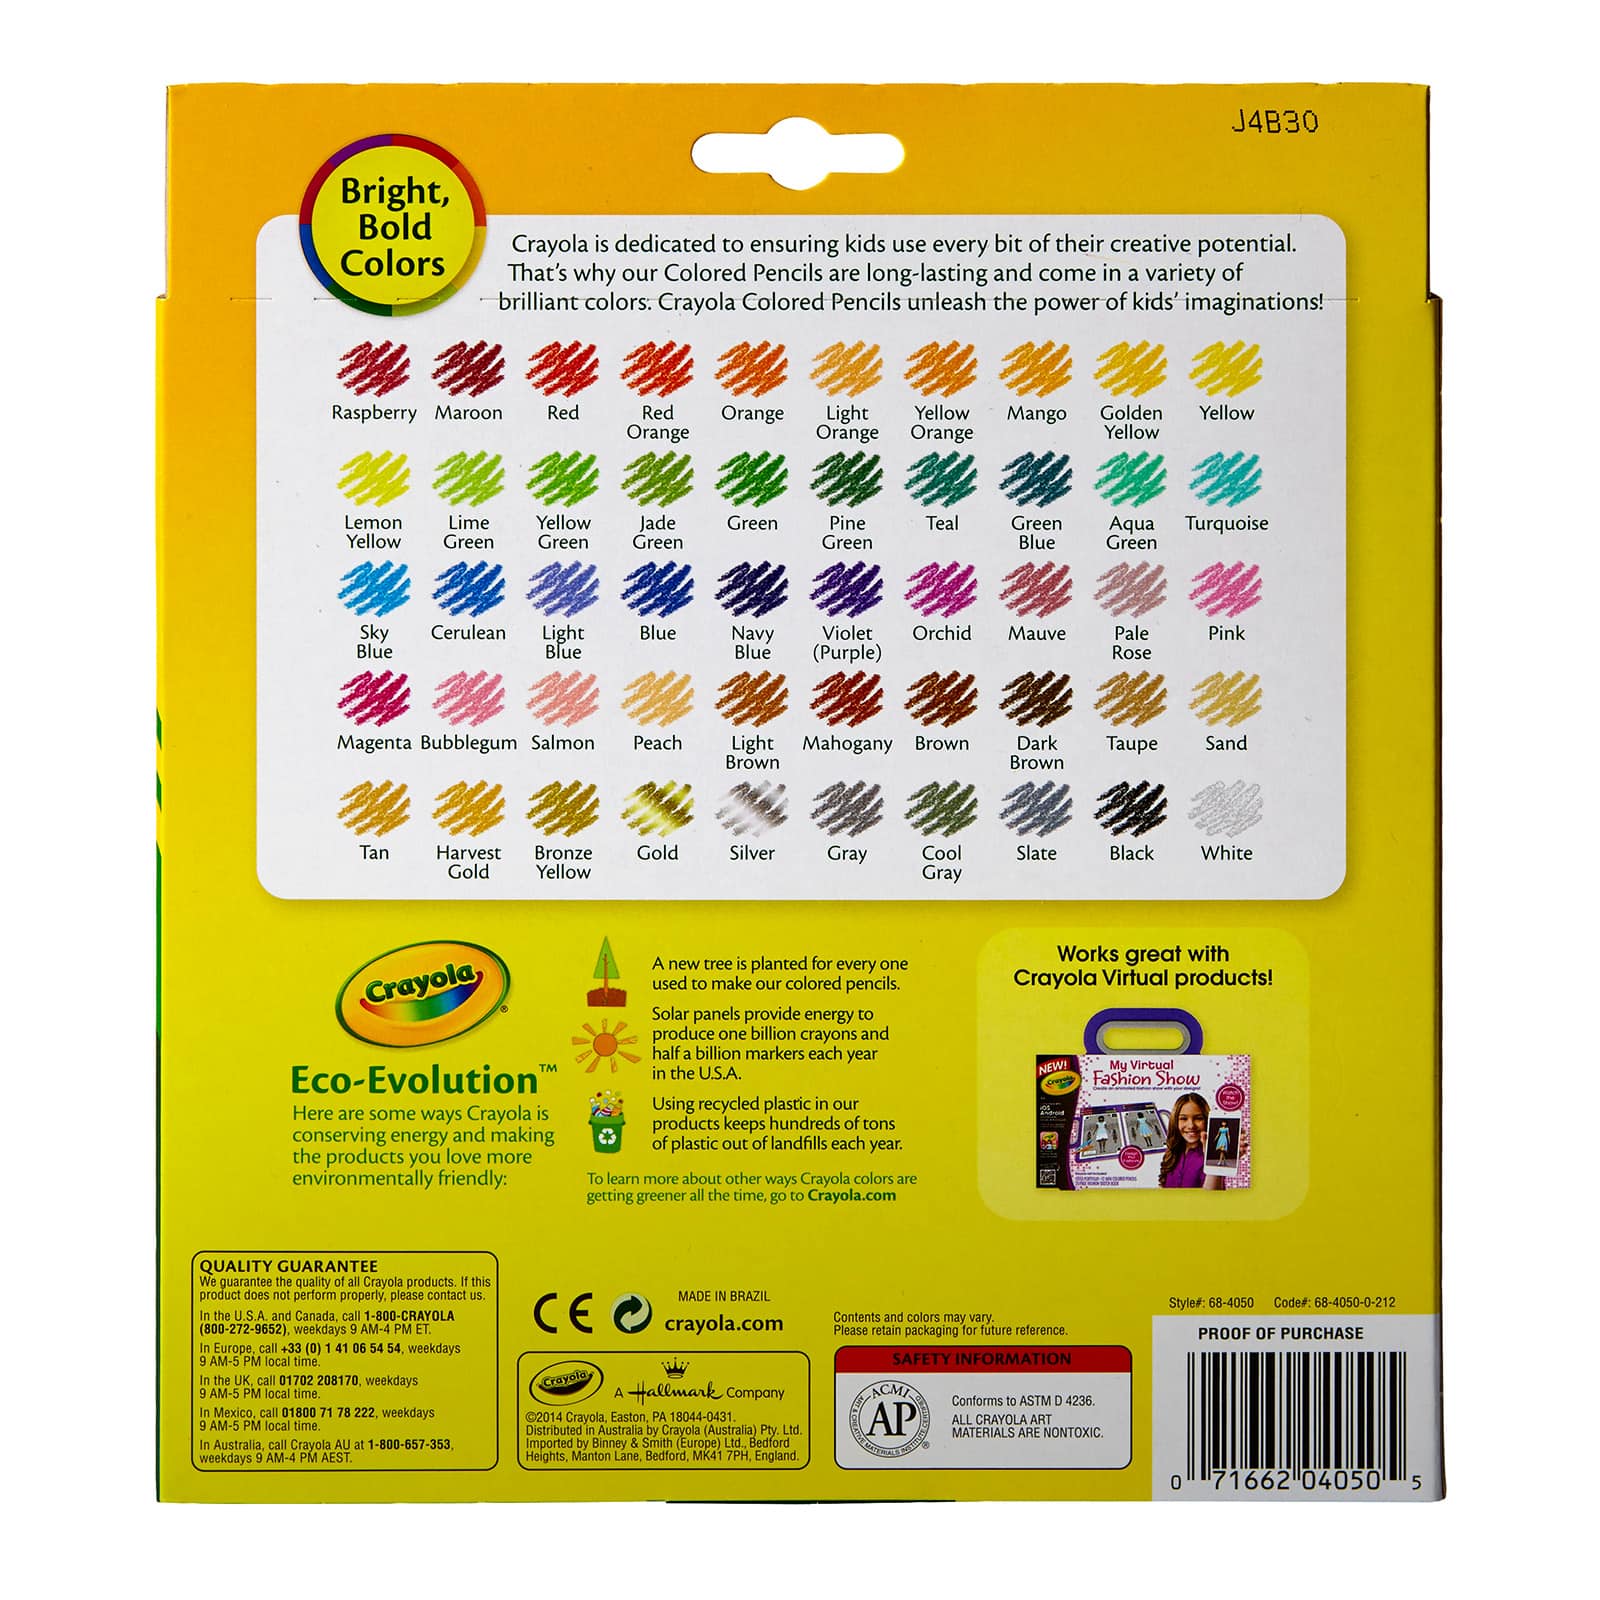 Crayola Colored Pencils, 50 Count